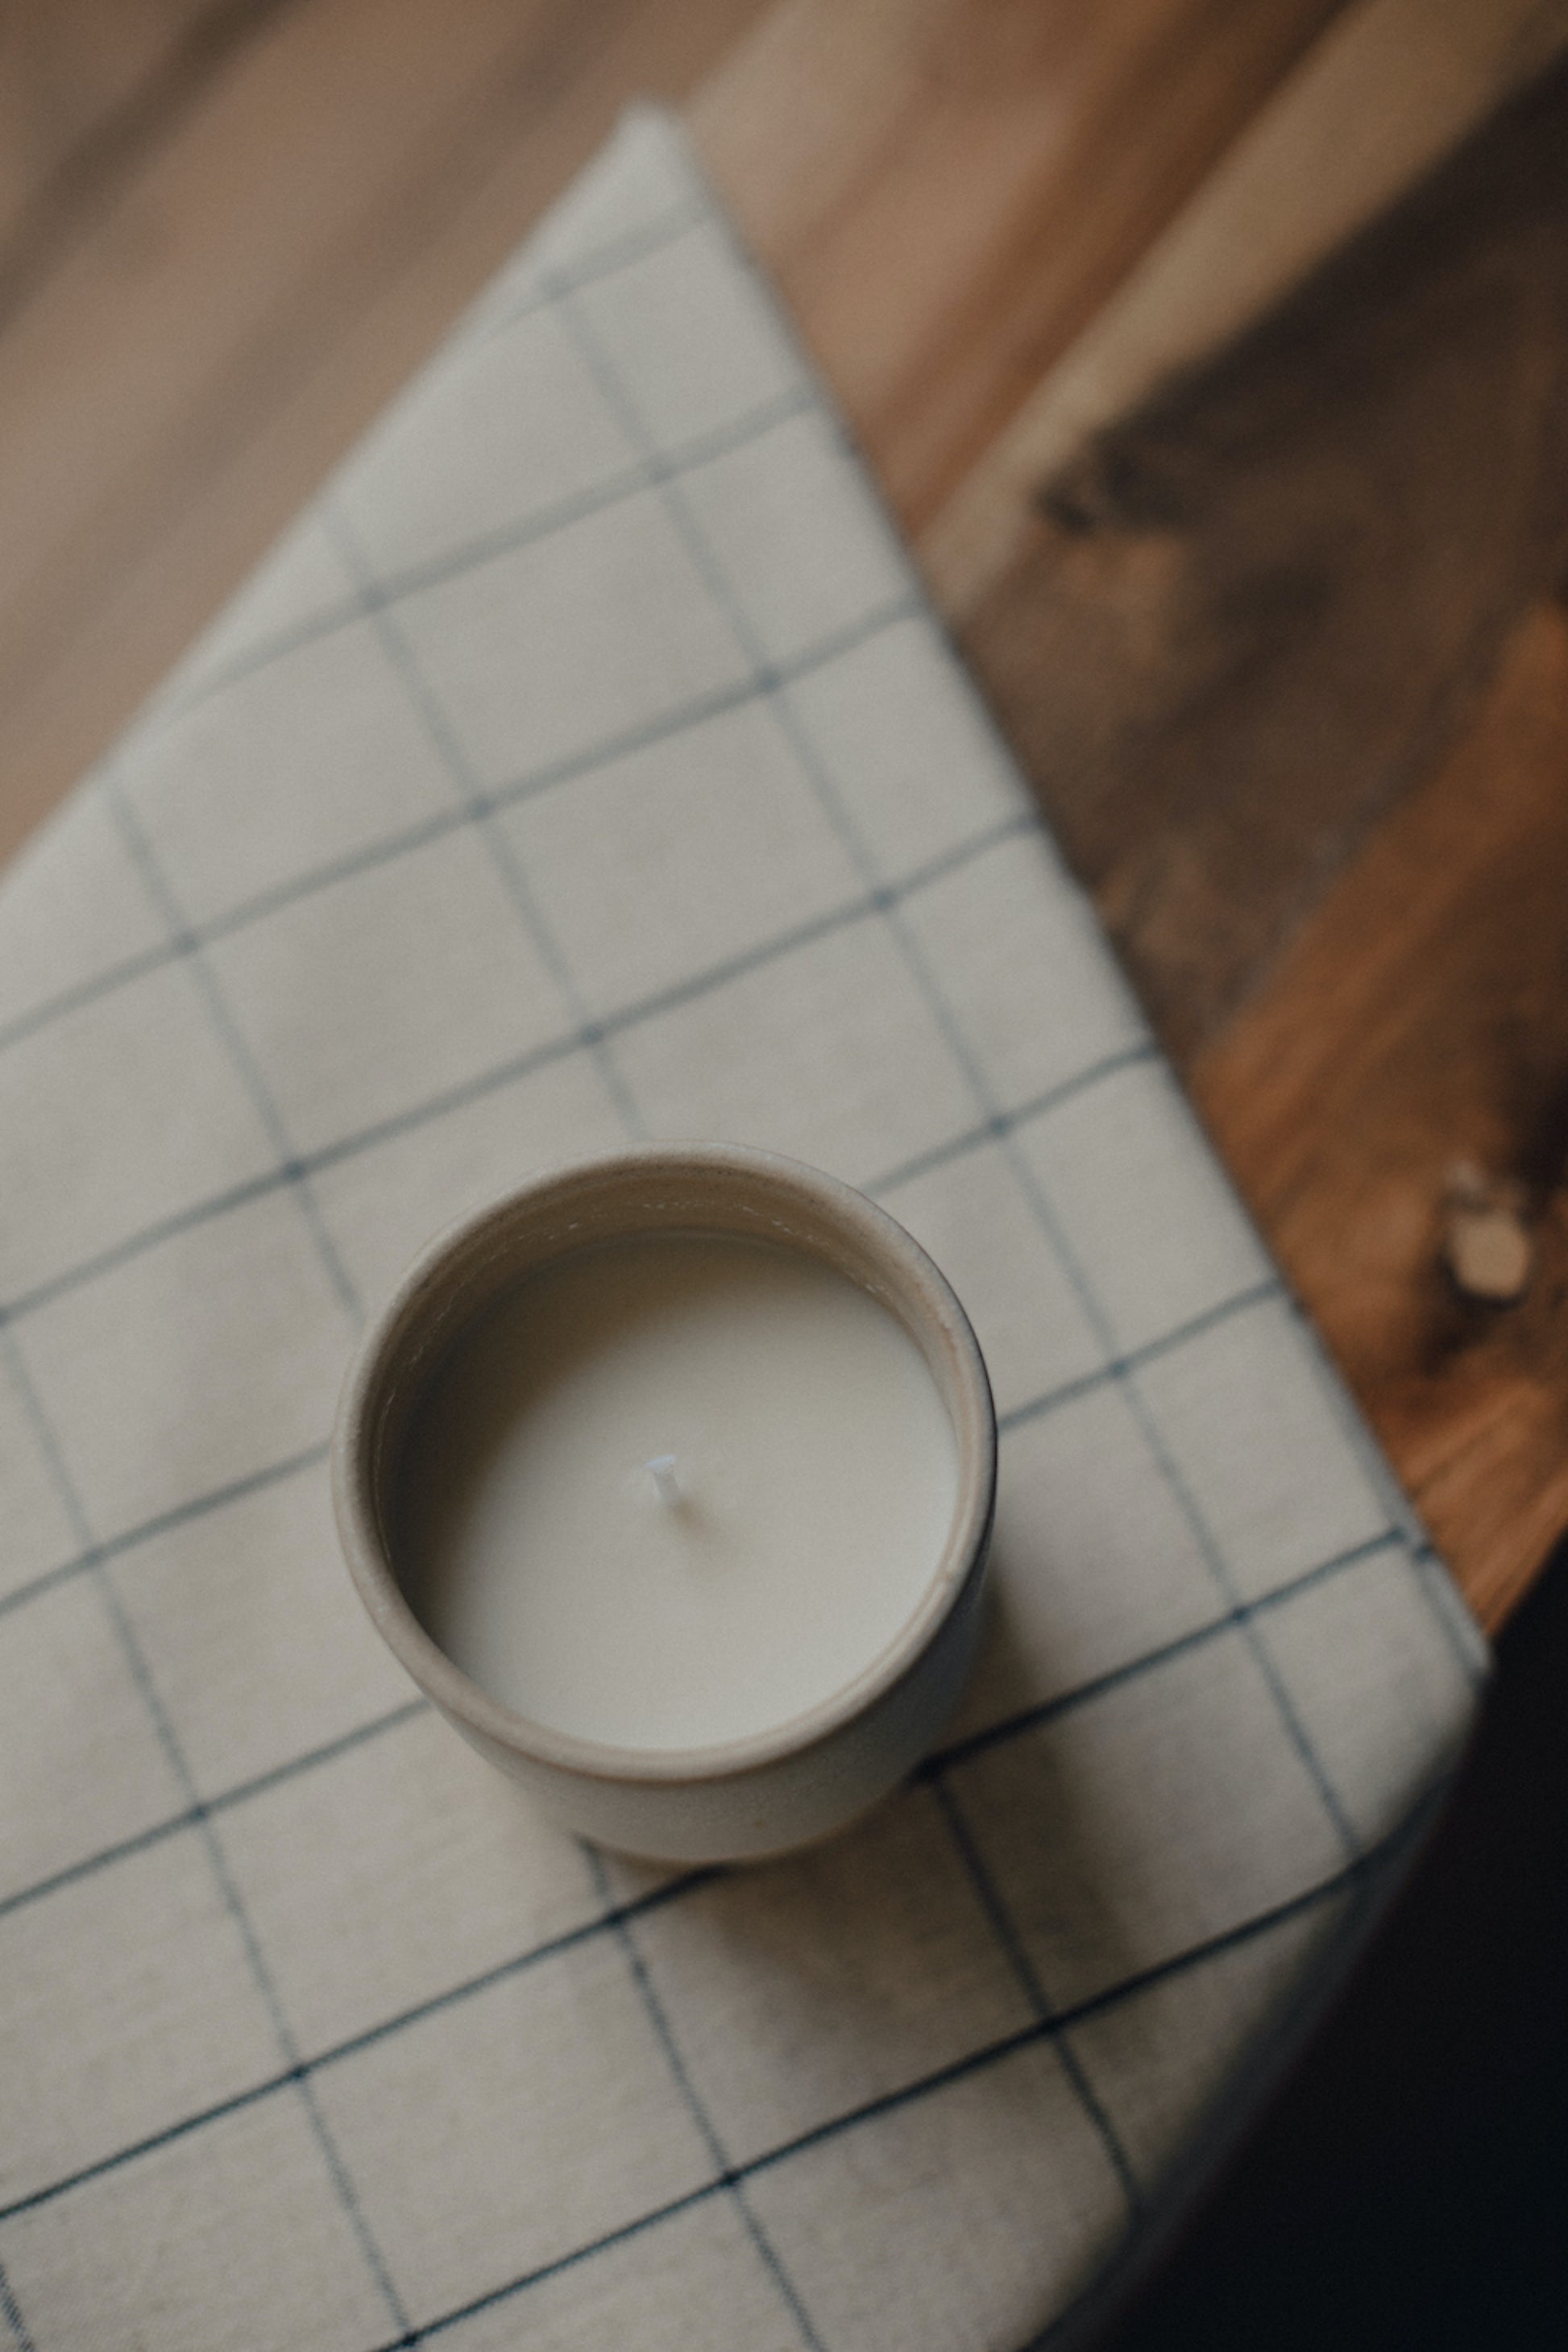 Bougie céramique rechargeable blanche La Poudrée – LABOGIE